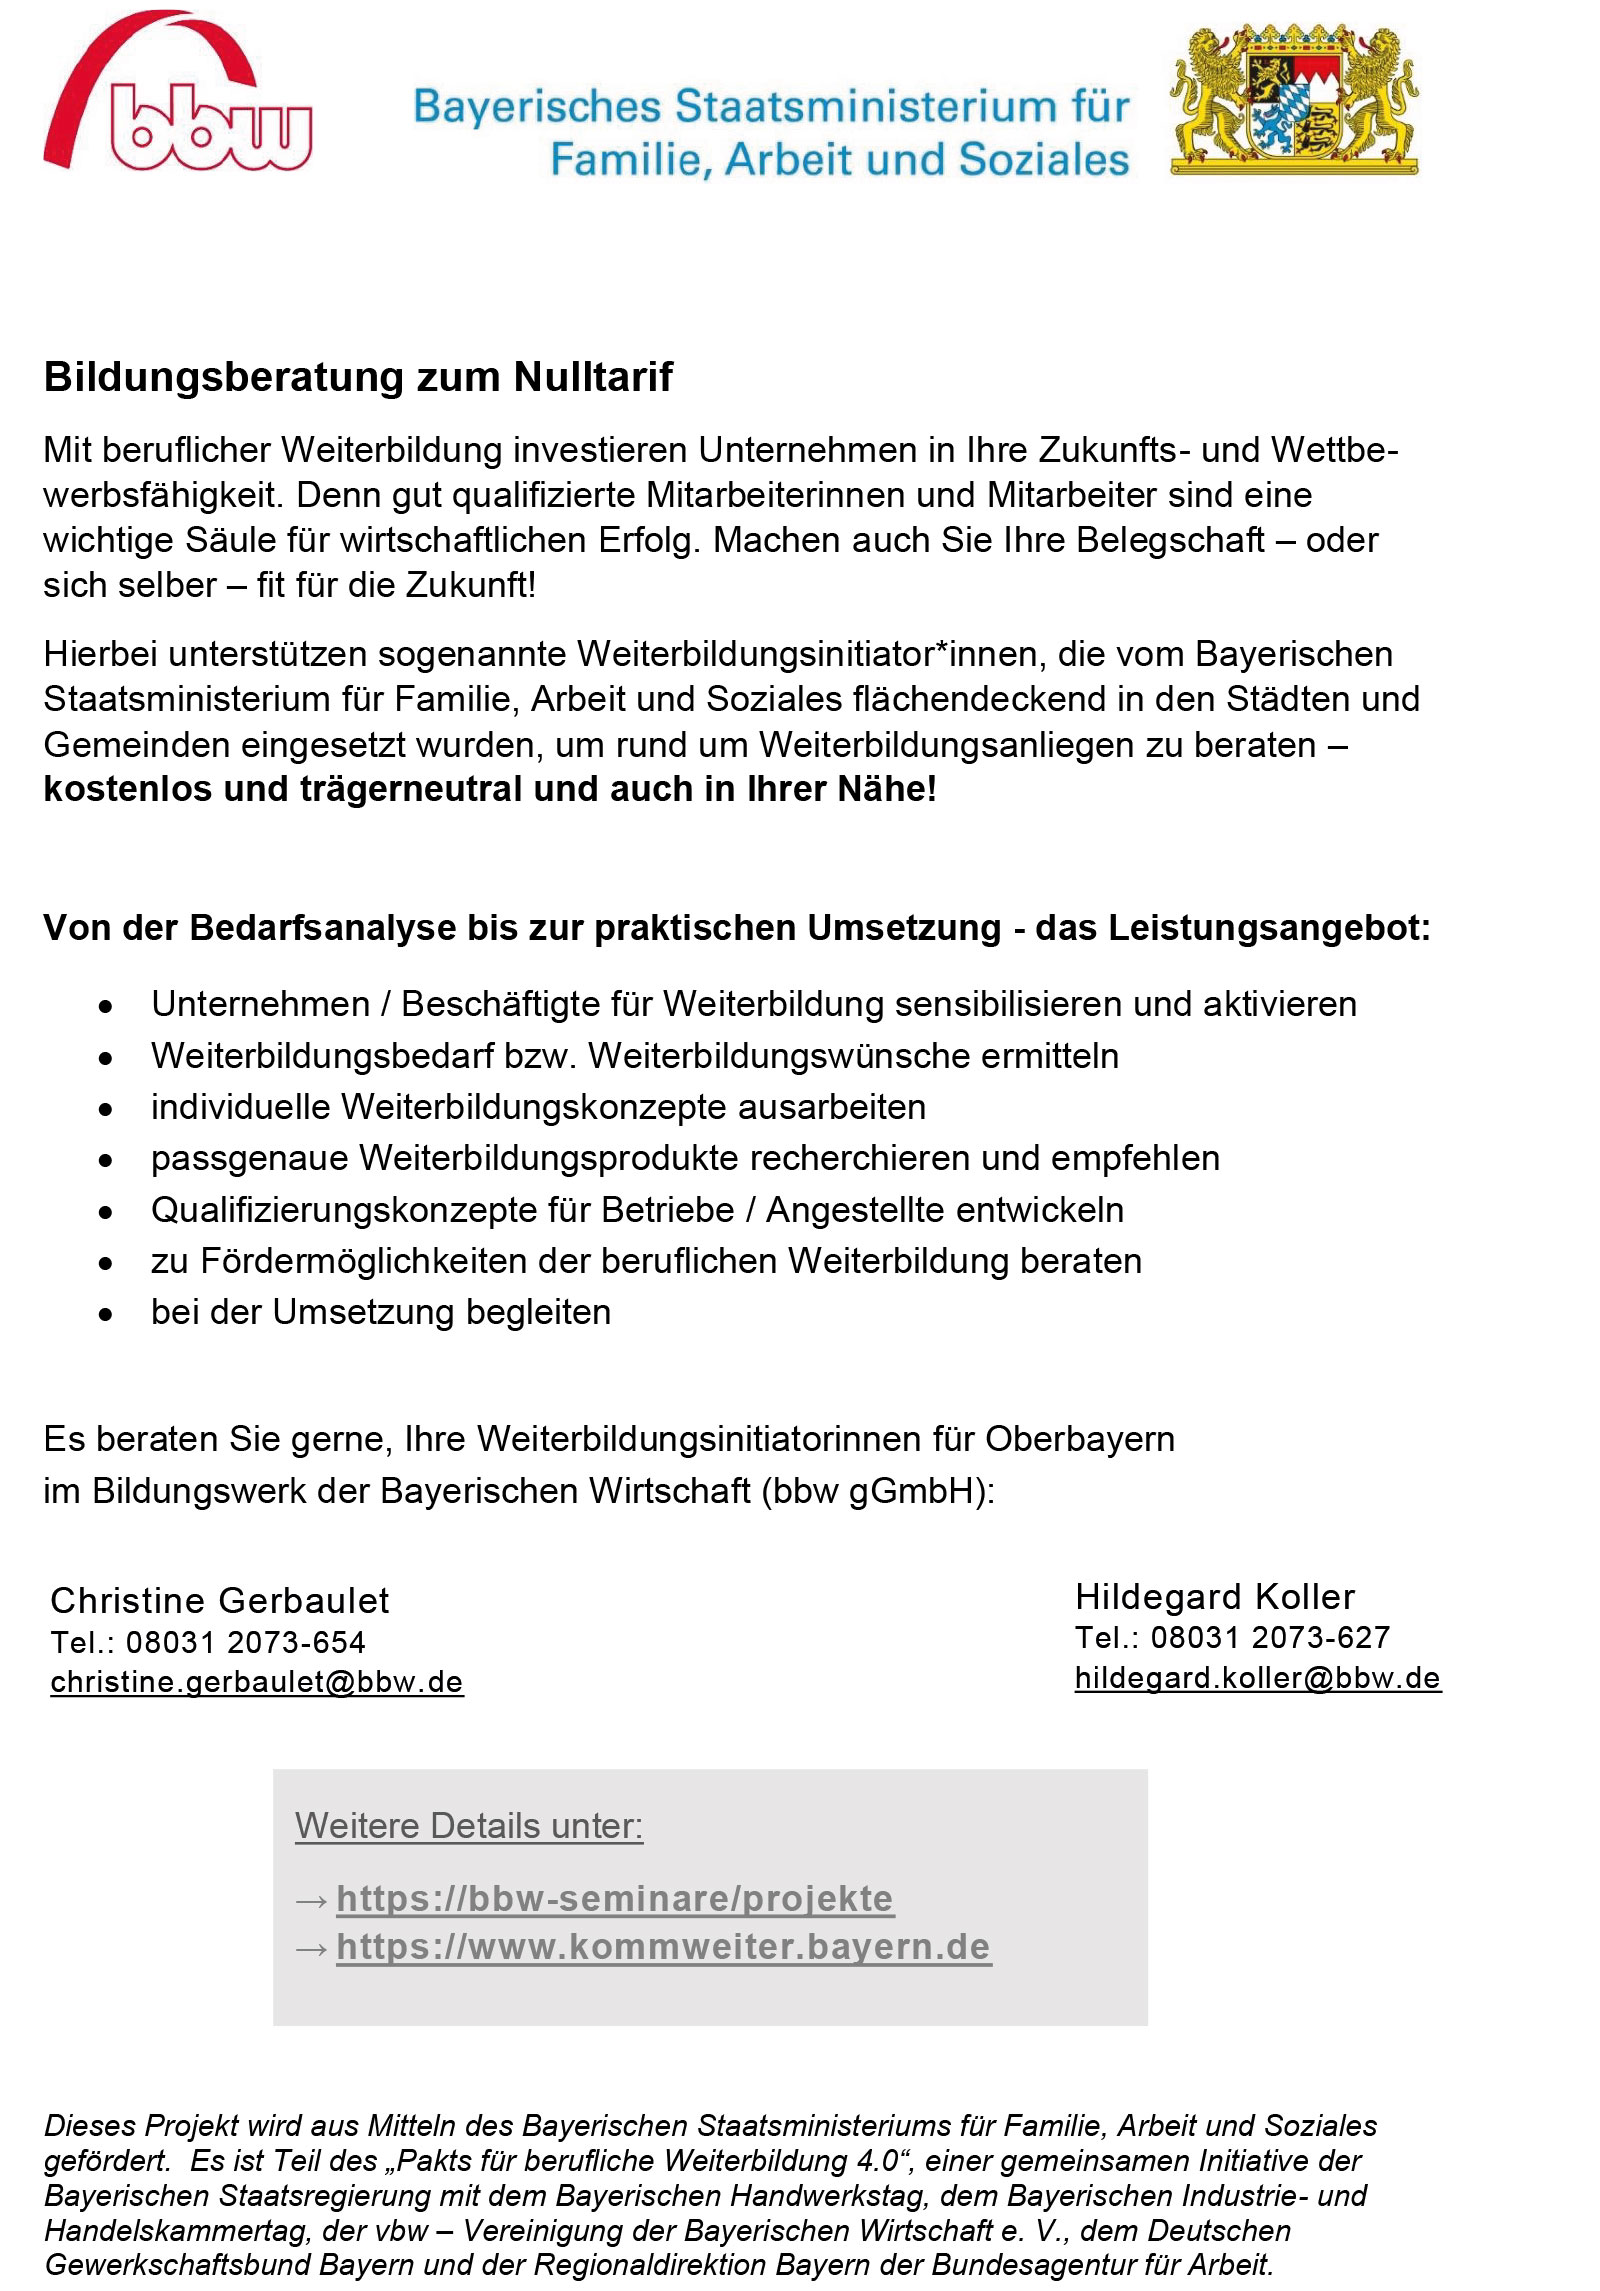 Flyer Bildungswerk der Bayerischen Wirtschaft (BBW)